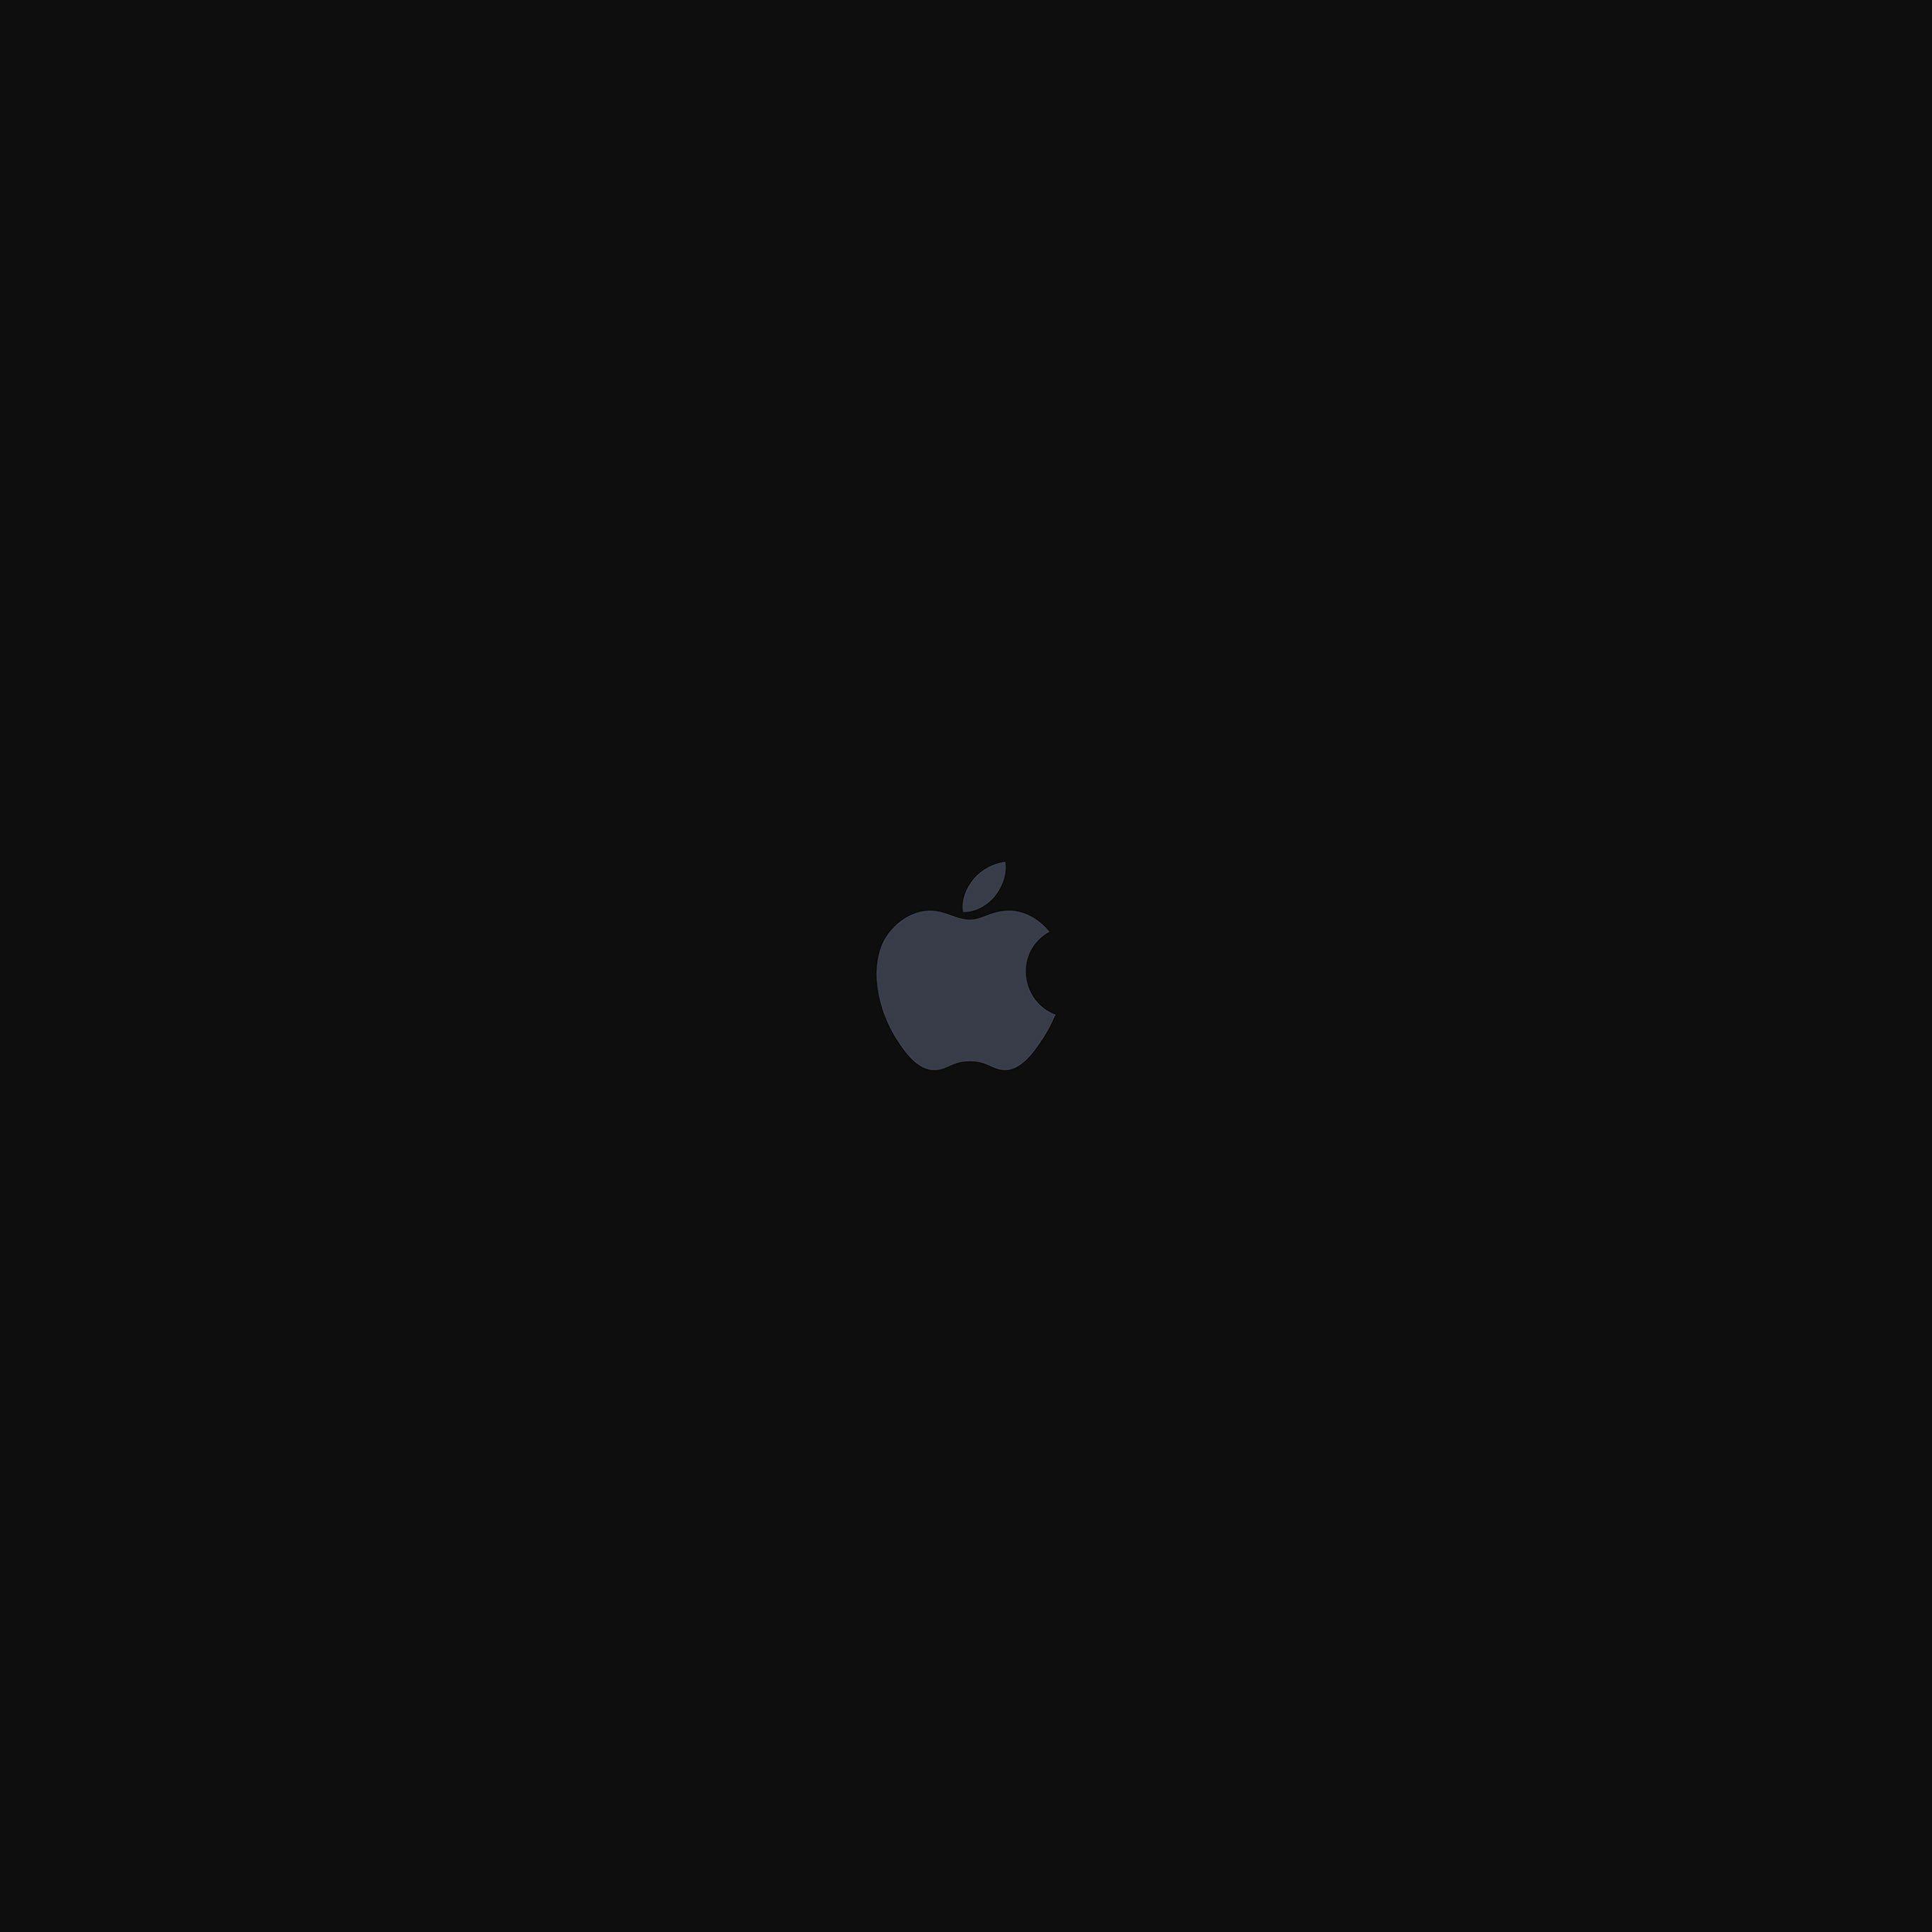 Hình nền Apple  Hình nền  Hình ảnh  Hình ảnh  Hình ảnh  YL Computing